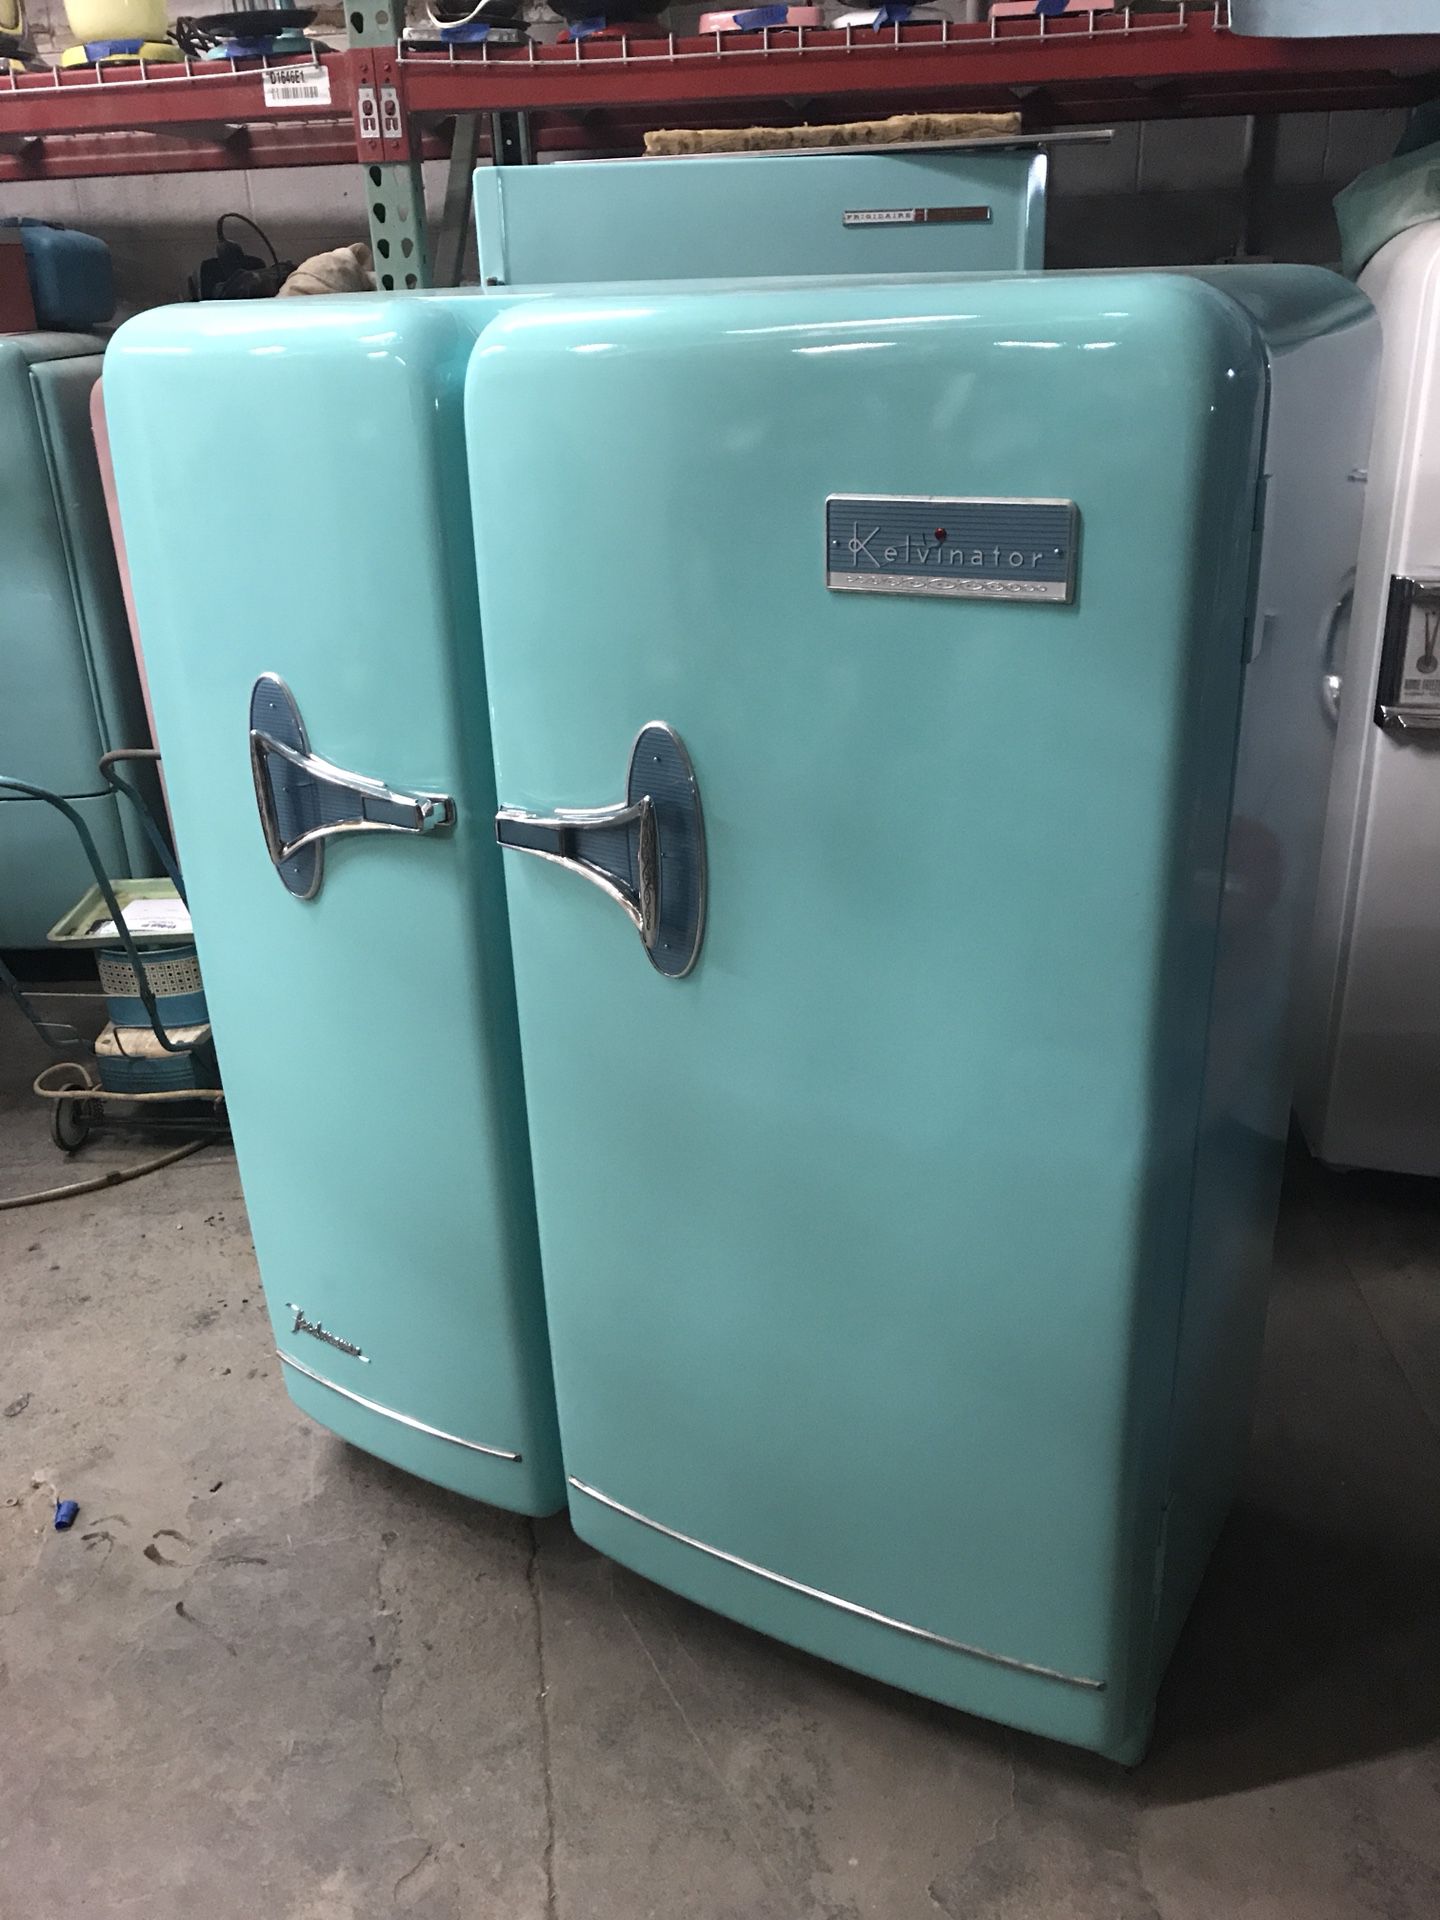 Kelvinator foodarama Foodorama vintage refrigerator